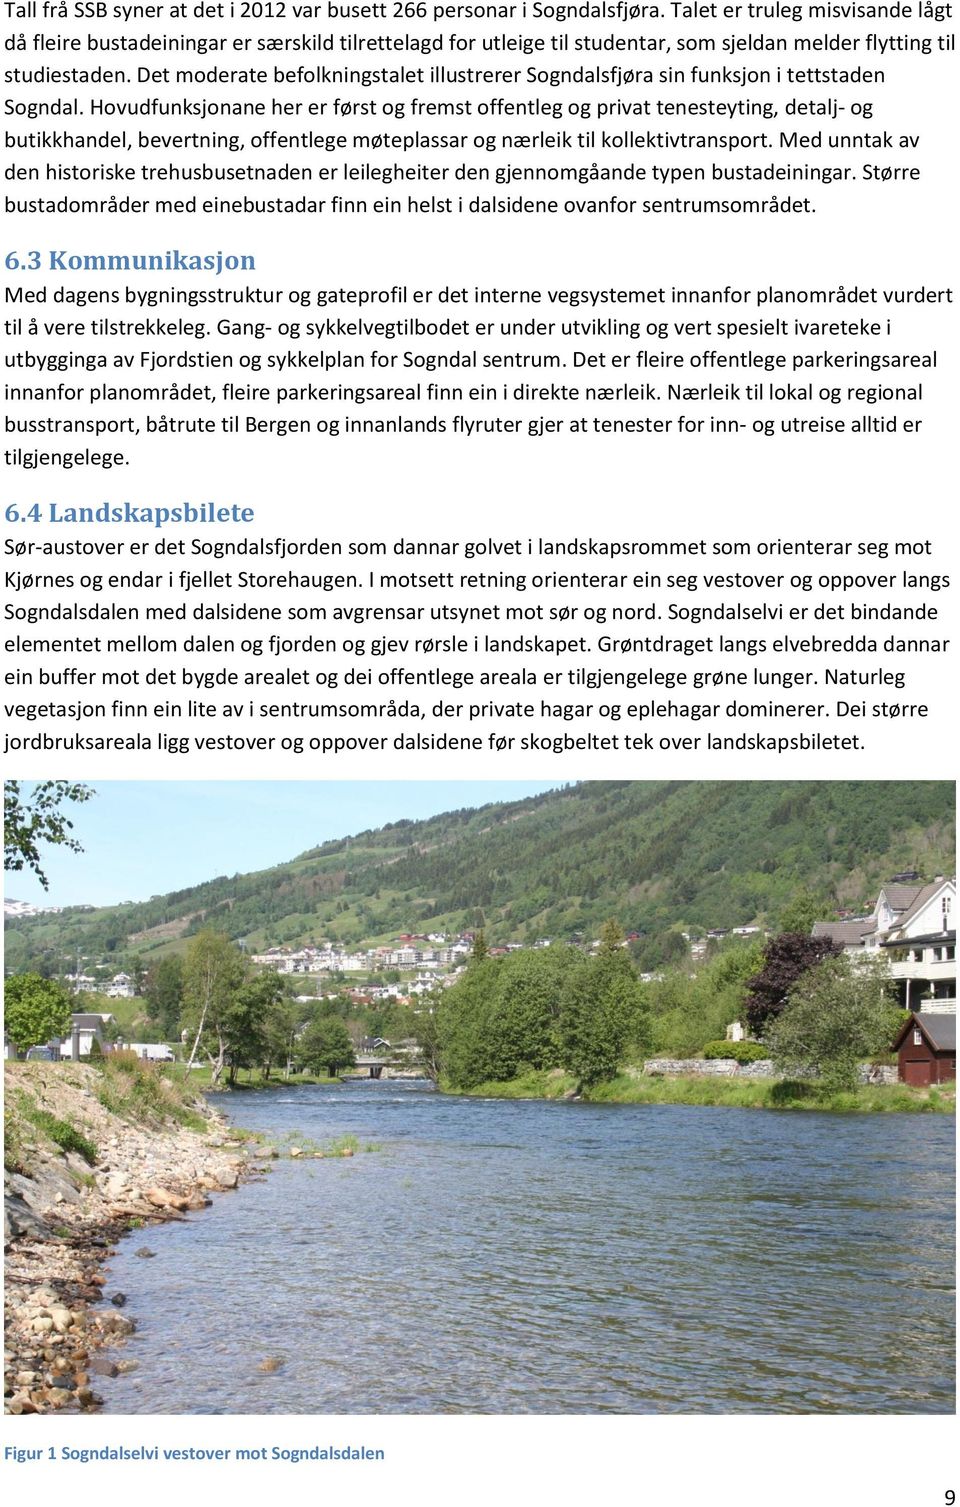 Det moderate befolkningstalet illustrerer Sogndalsfjøra sin funksjon i tettstaden Sogndal.